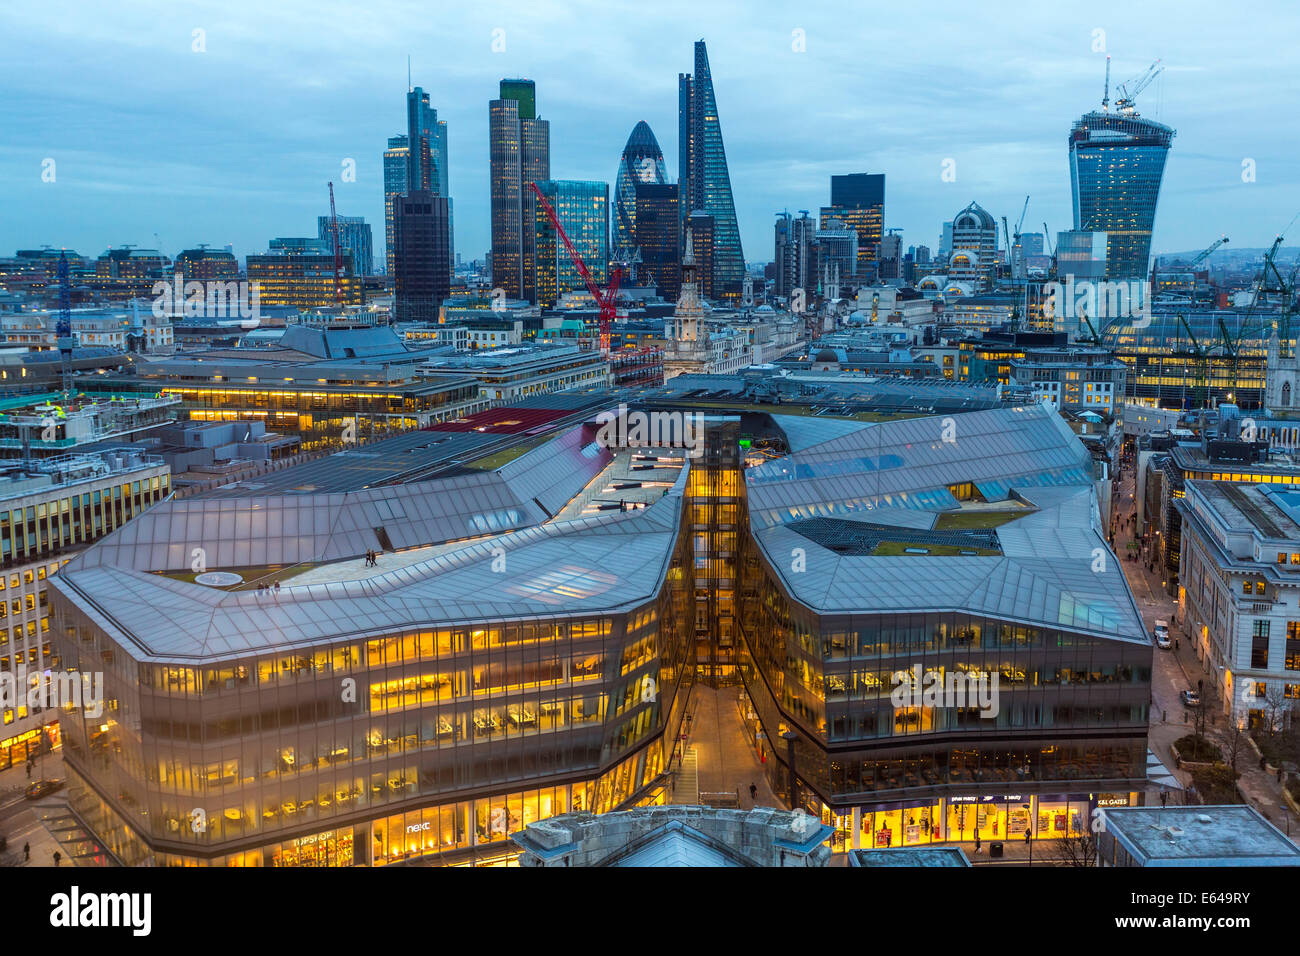 Ver el pepinillo, edificio de Walkie Talkie y el distrito financiero, Londres, Reino Unido. Foto de stock